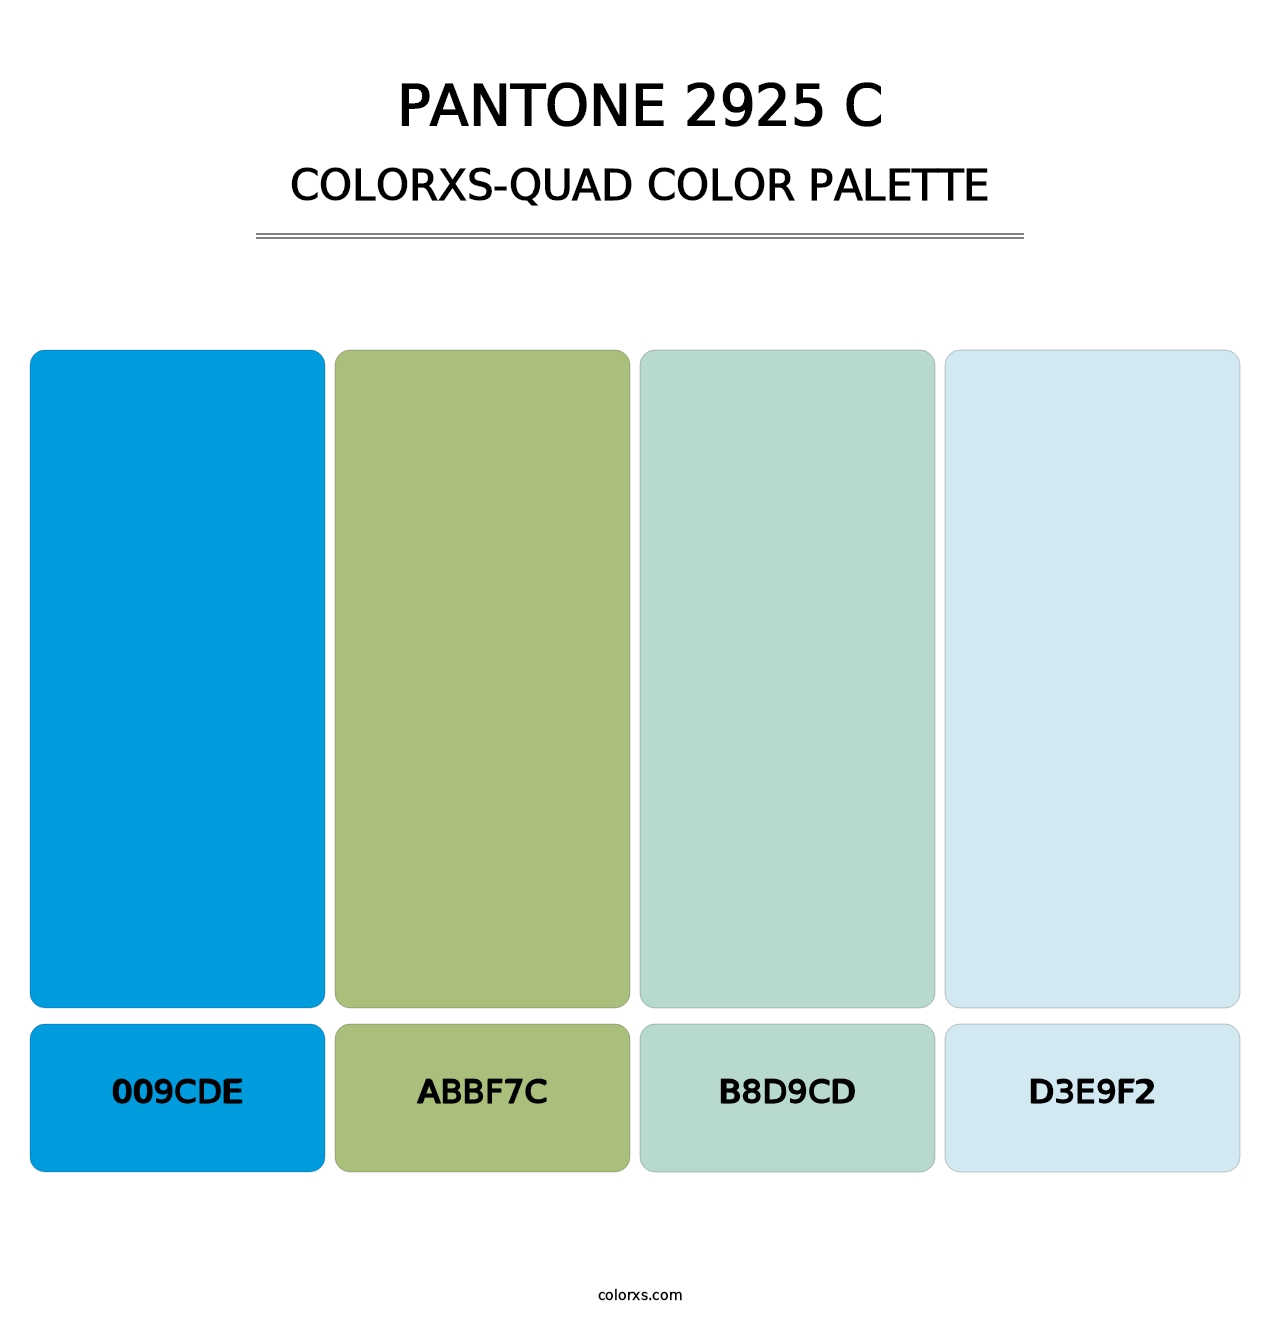 PANTONE 2925 C - Colorxs Quad Palette